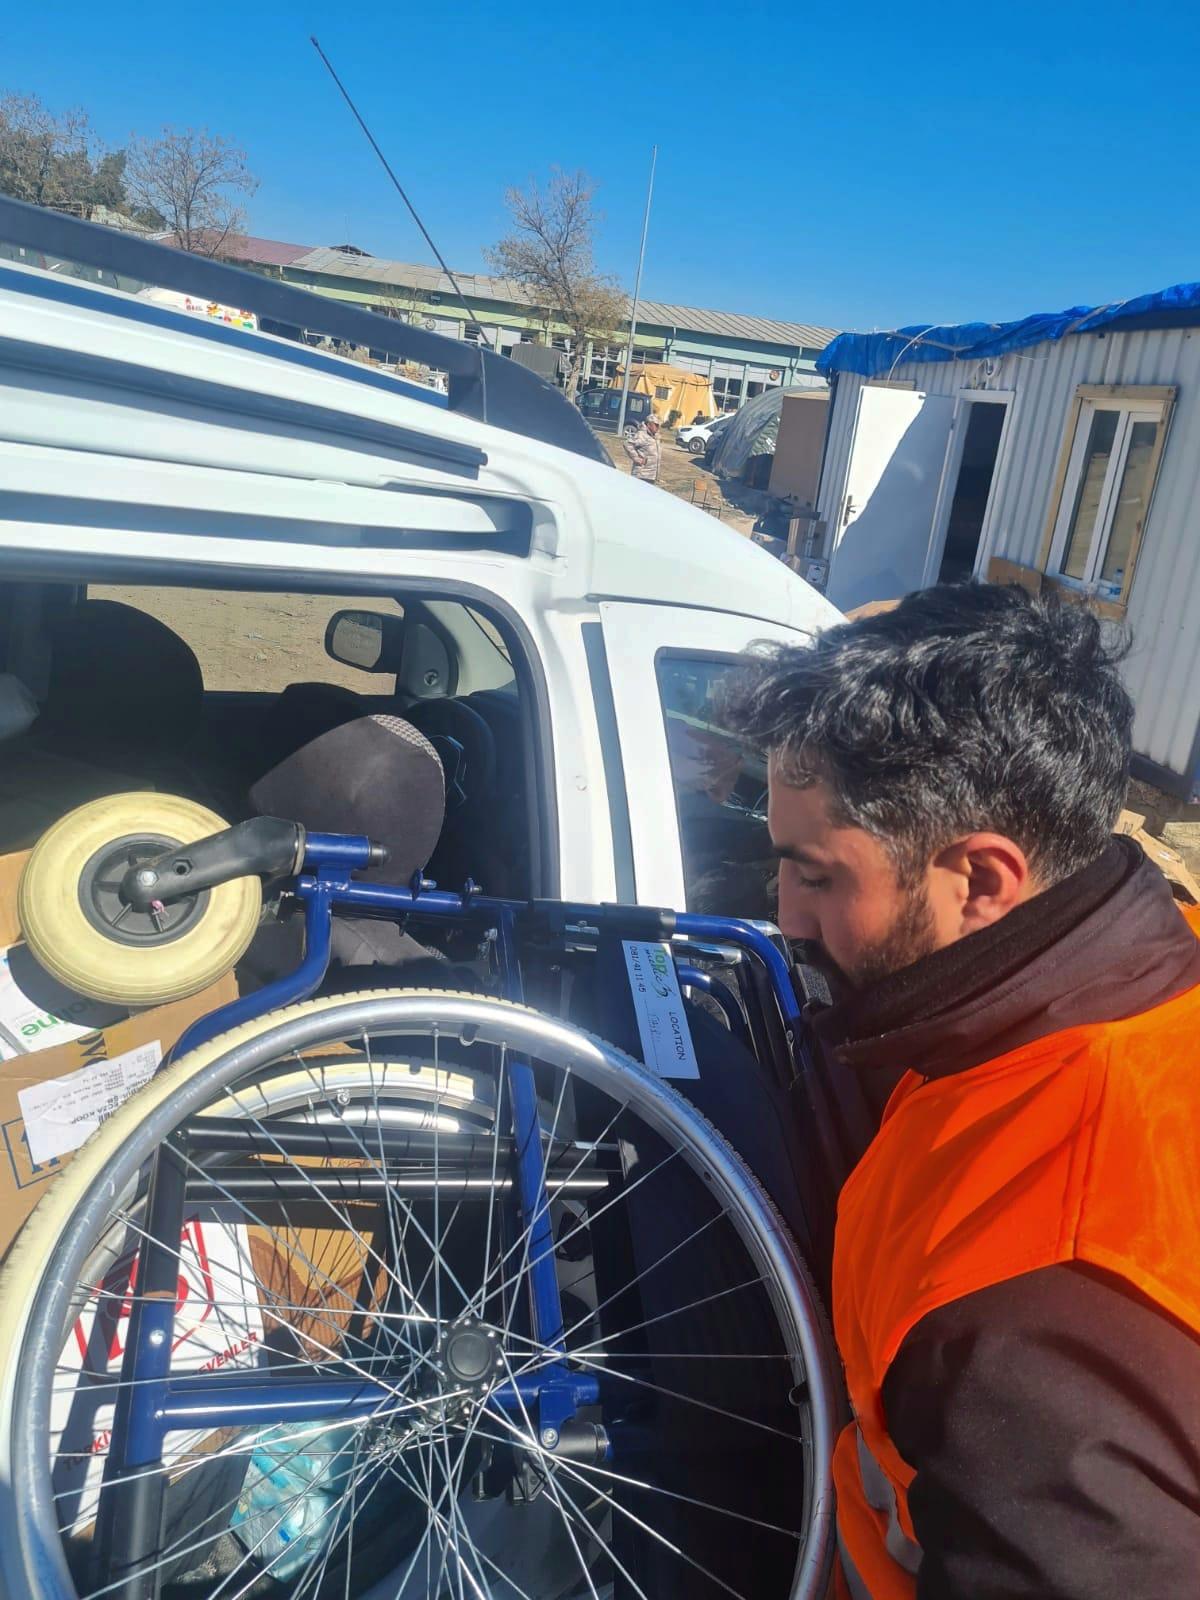 EYGEV Gönüllüleri ile Deprem Bölgesindeki Destek Çalışmalarına Devam Ediyor